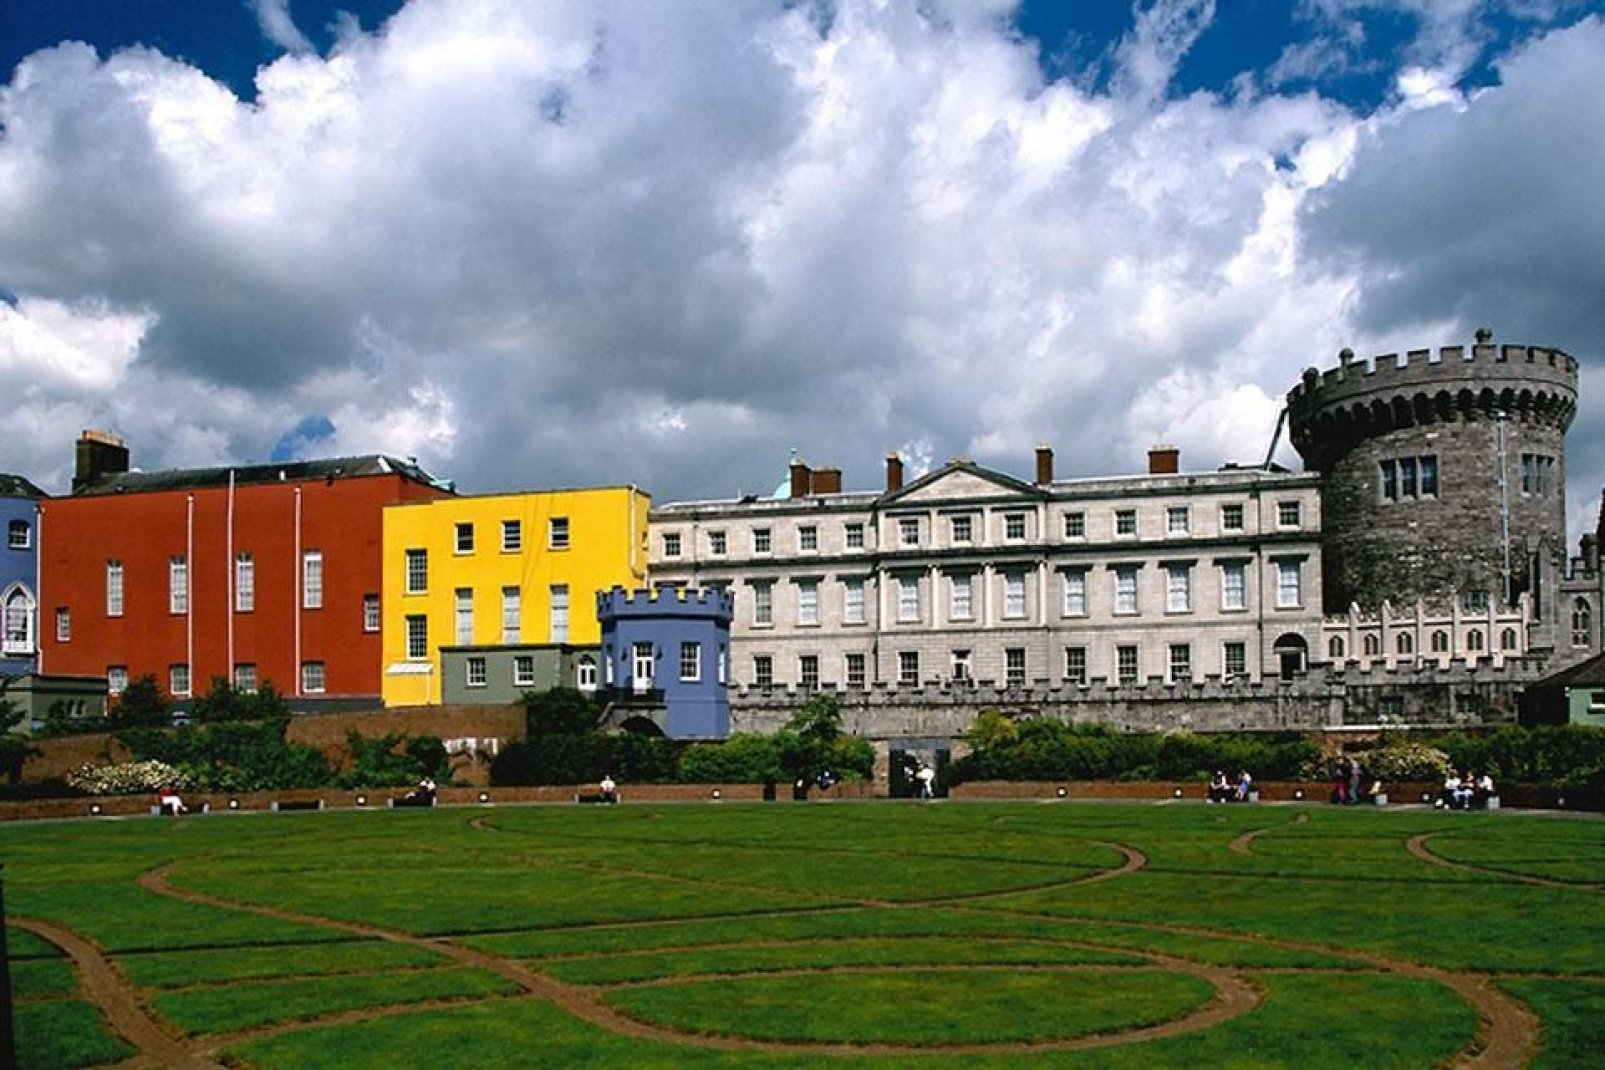 Das Schloss von Dublin ist von bunten neueren Bauwerken umgeben und ragt über einem herrlichen, sehr gepflegten Park.